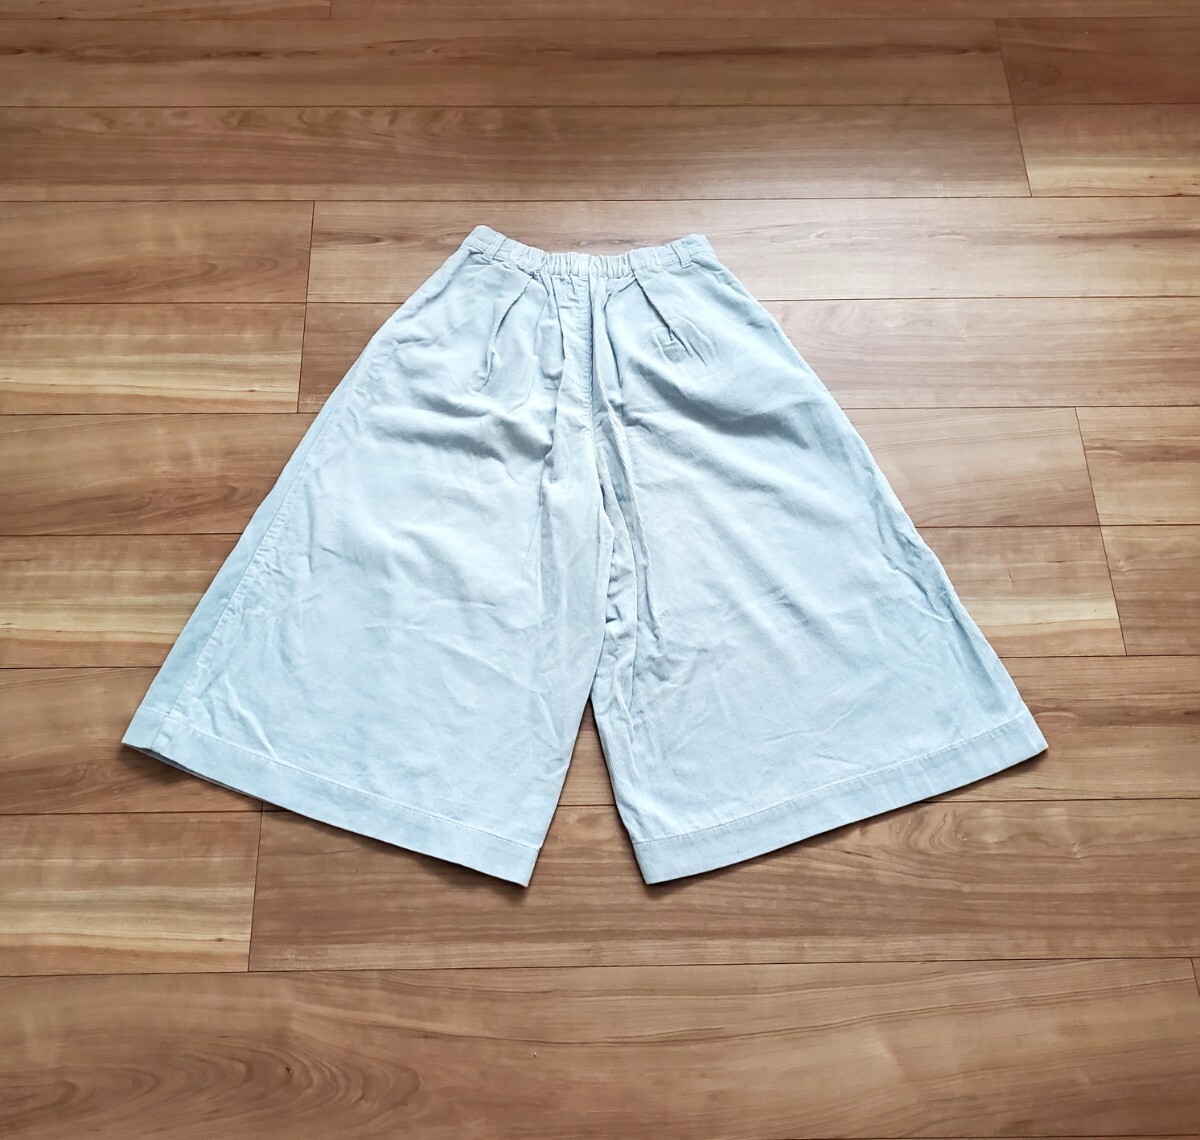 レディース w closet ワイドパンツ パンツ 5分丈 水色系 コーデュロイ Fサイズ_画像4